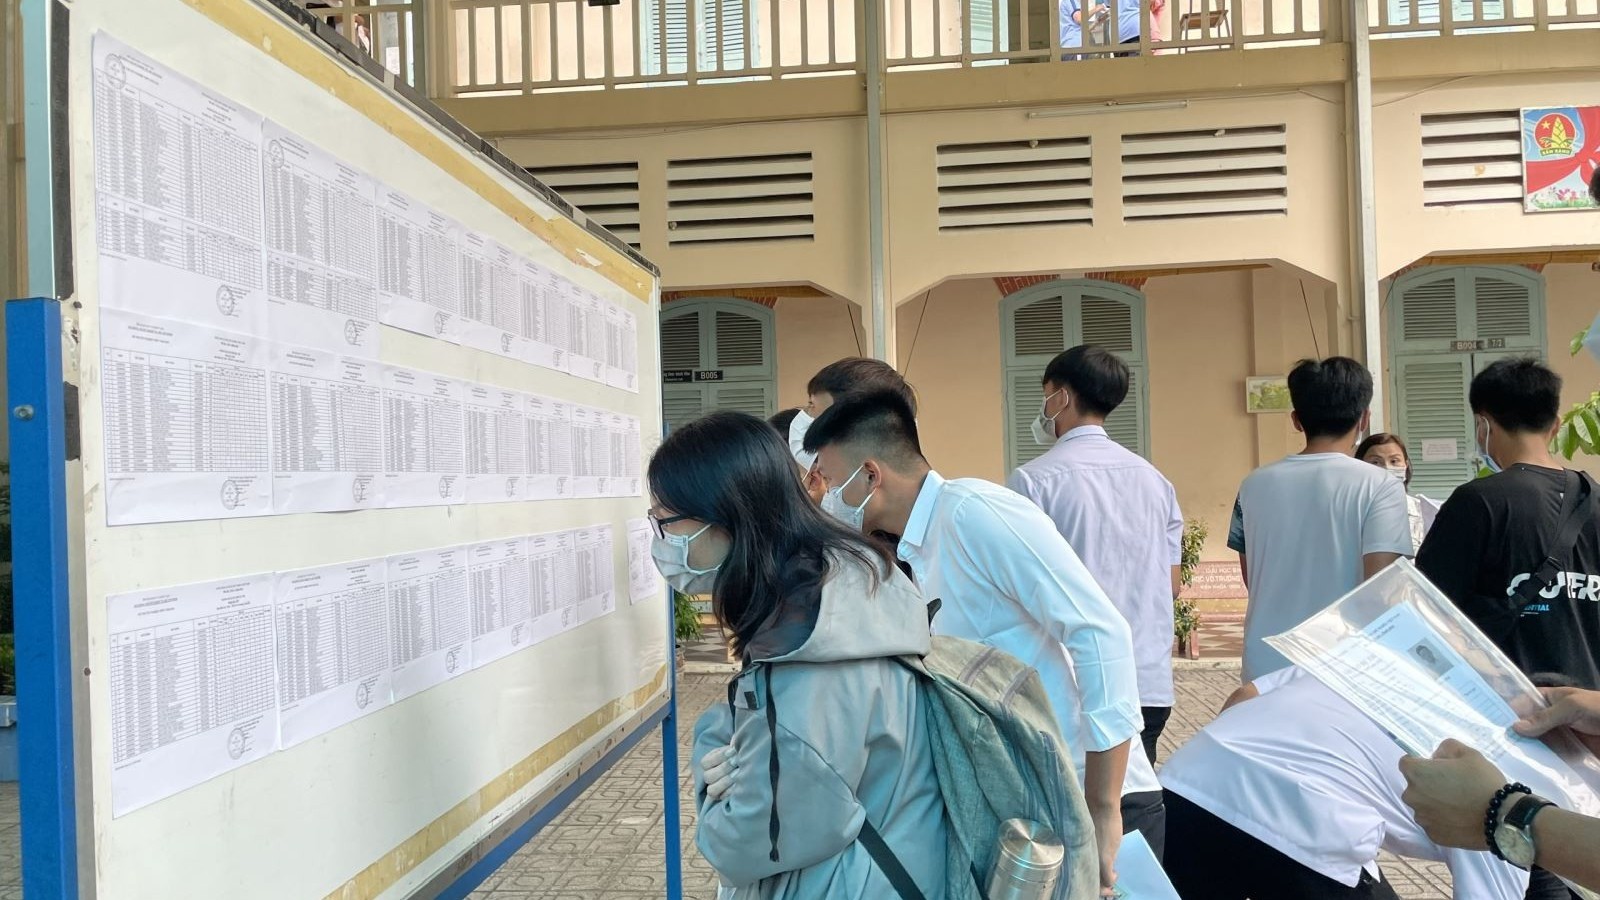 TP. Hồ Chí Minh: Hồ sơ xét tuyển điểm thi đánh giá năng lực giảm mạnh, điểm chuẩn không giảm